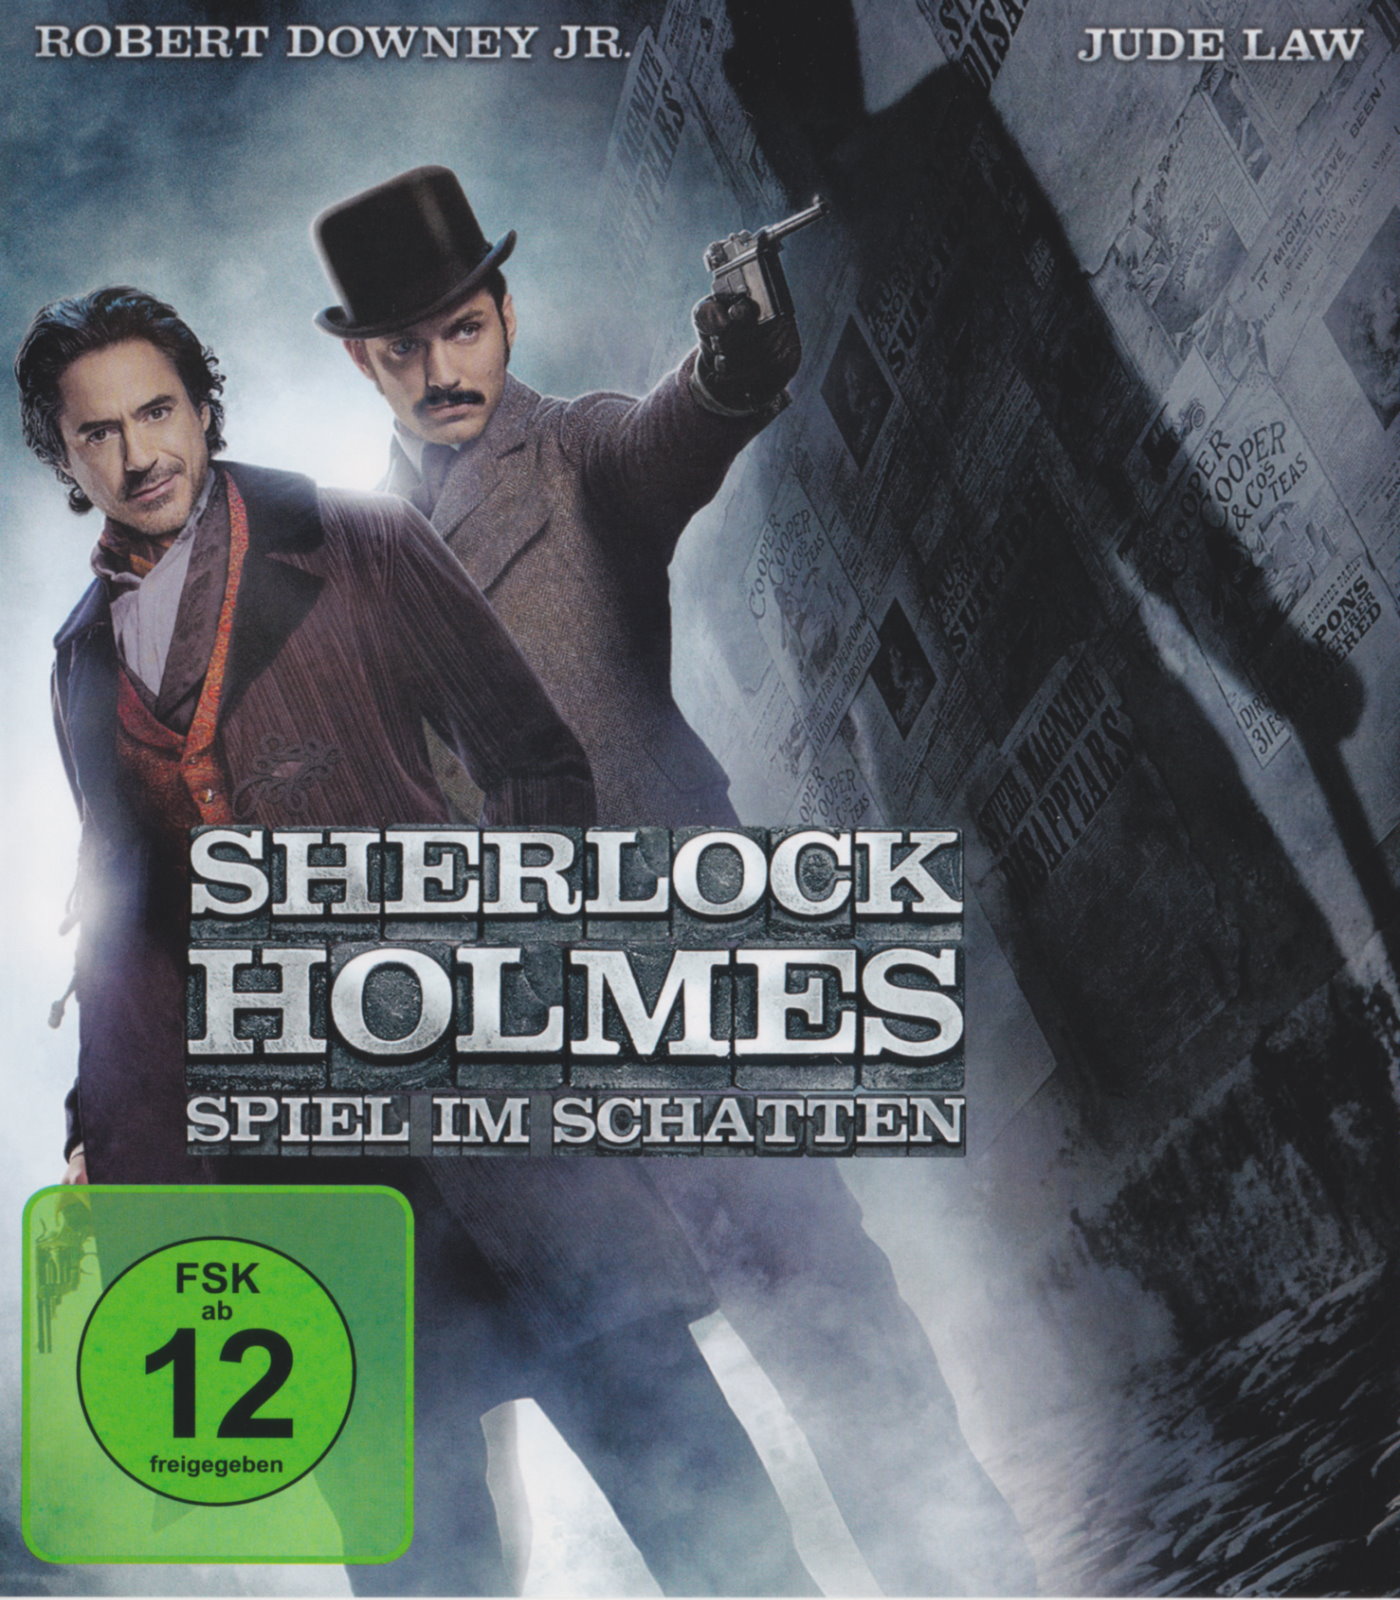 Cover - Sherlock Holmes - Spiel im Schatten.jpg